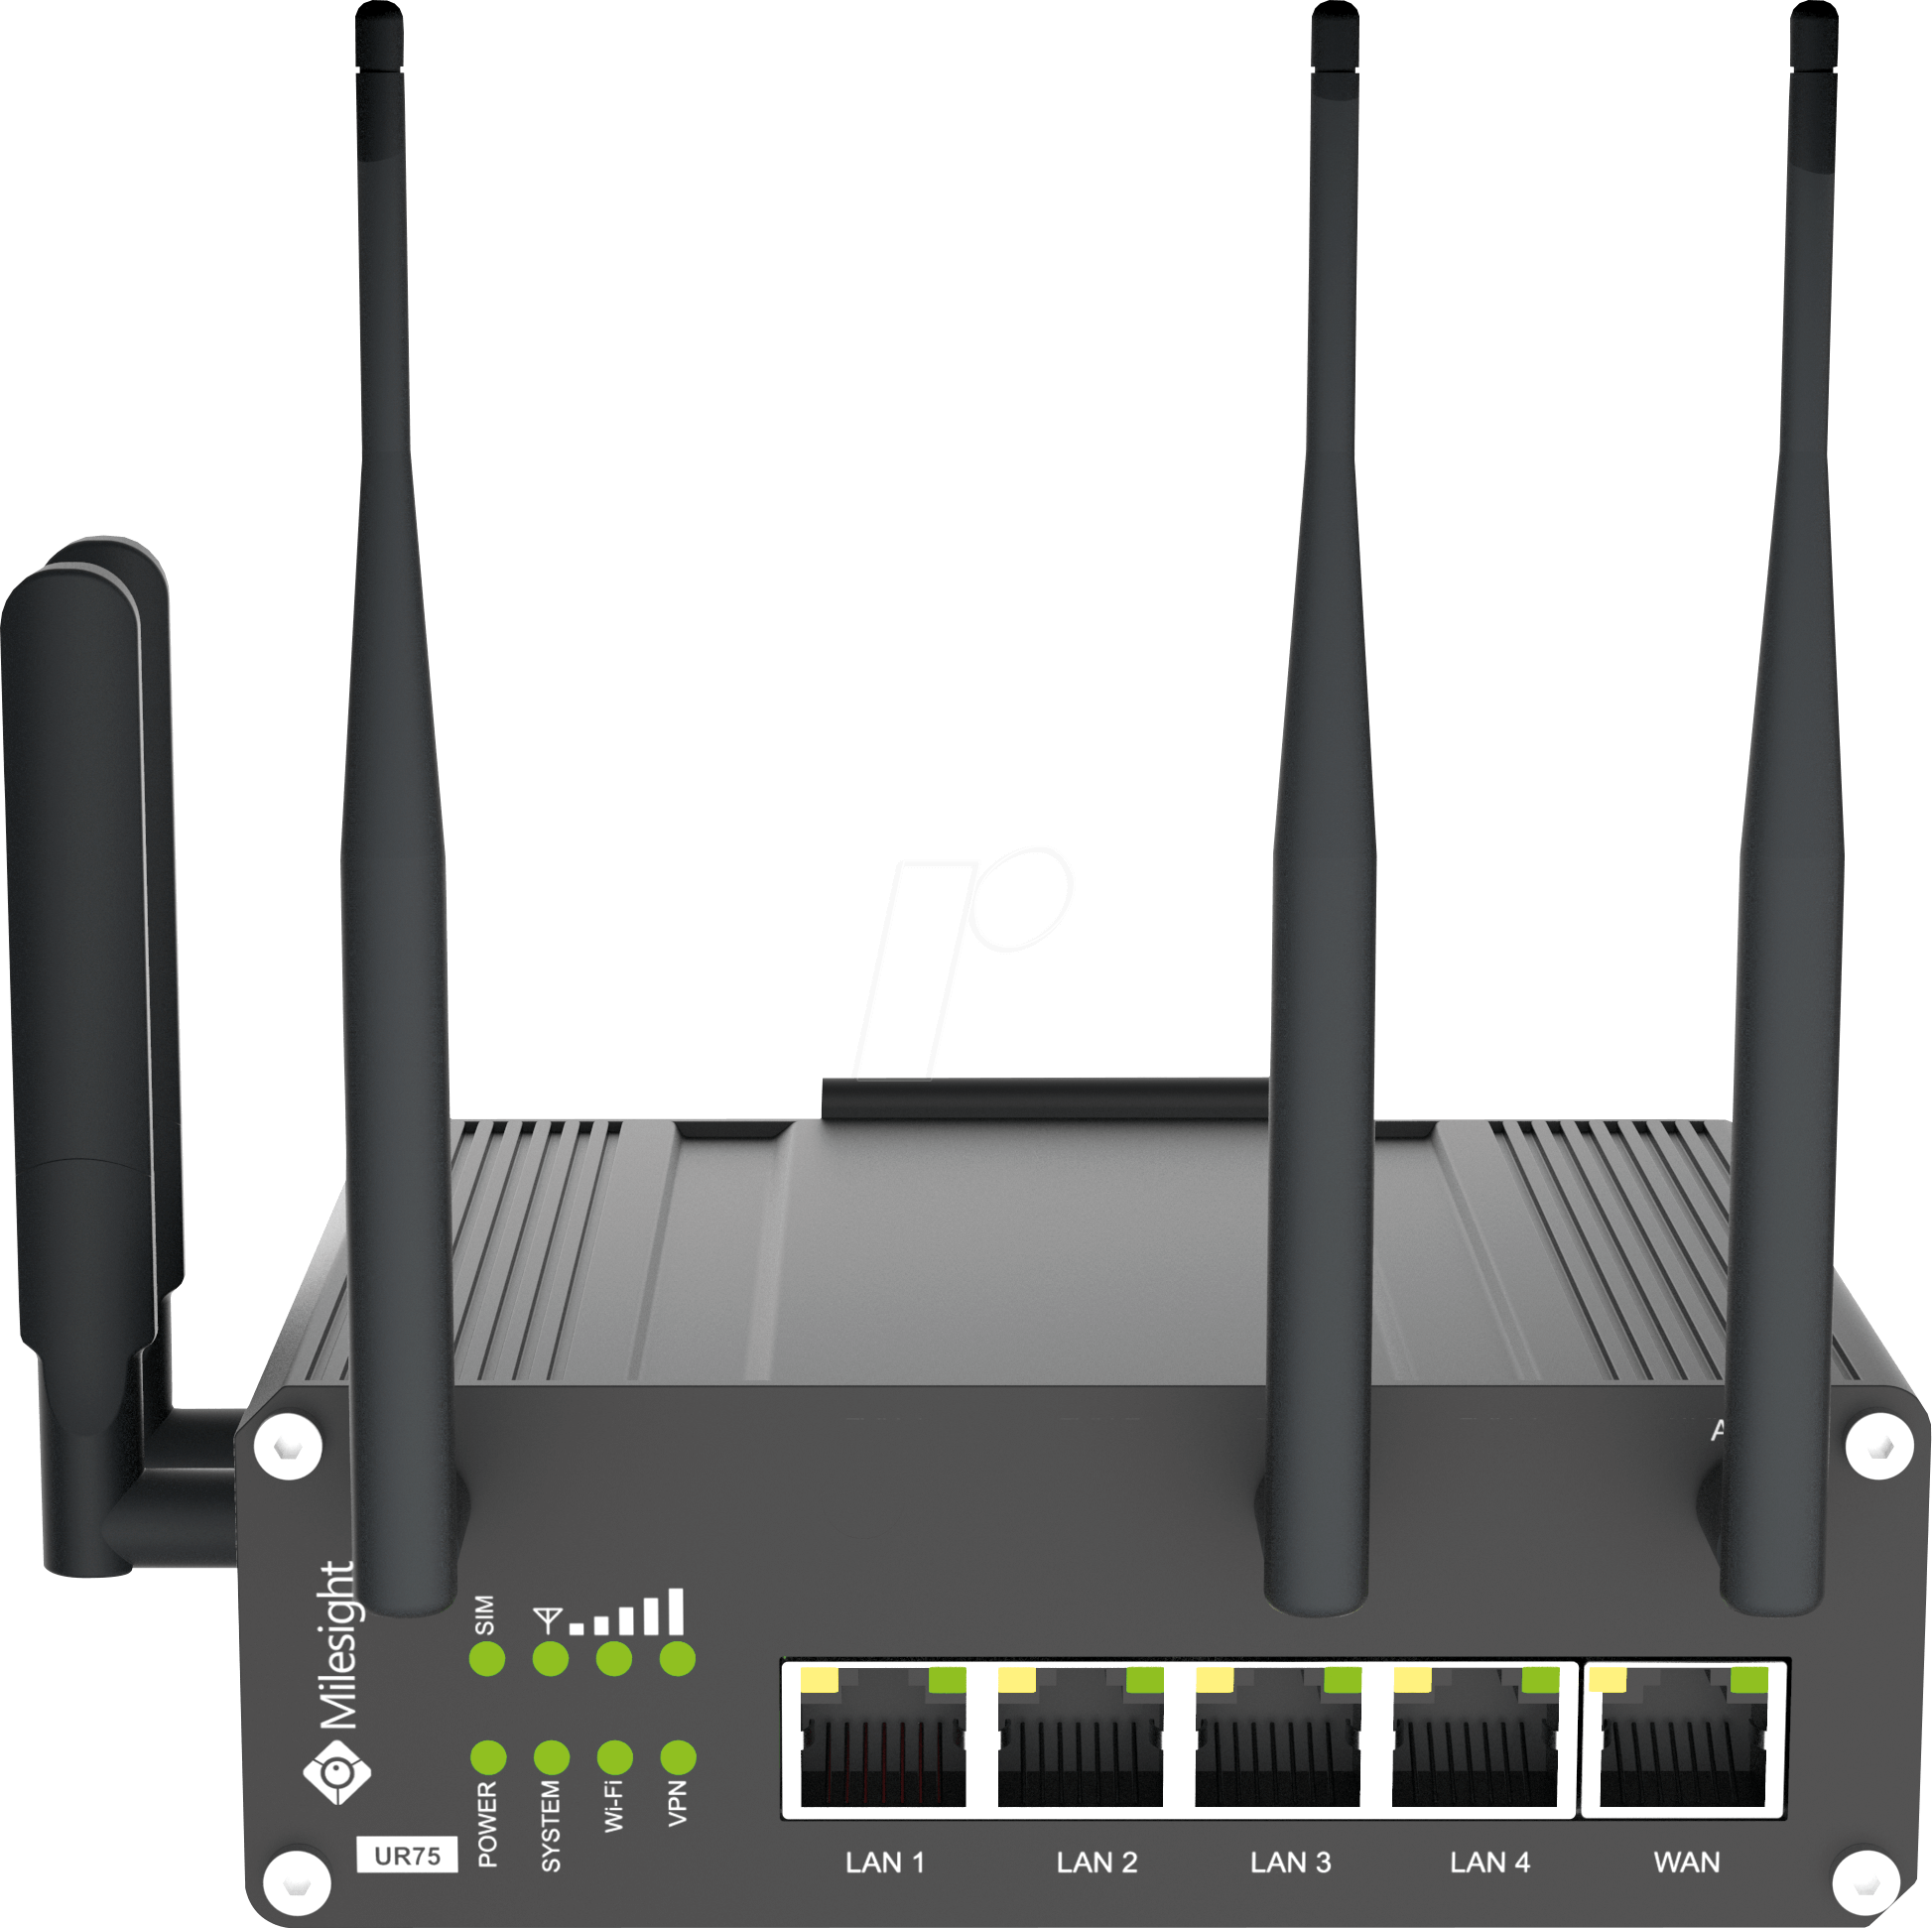 נתב סלולר תעשייתי רשת 5G LTE כולל WIFI ו- GPS ניתן לניהול ומאובטח Milesight UR75-L04EU-G-W (1)